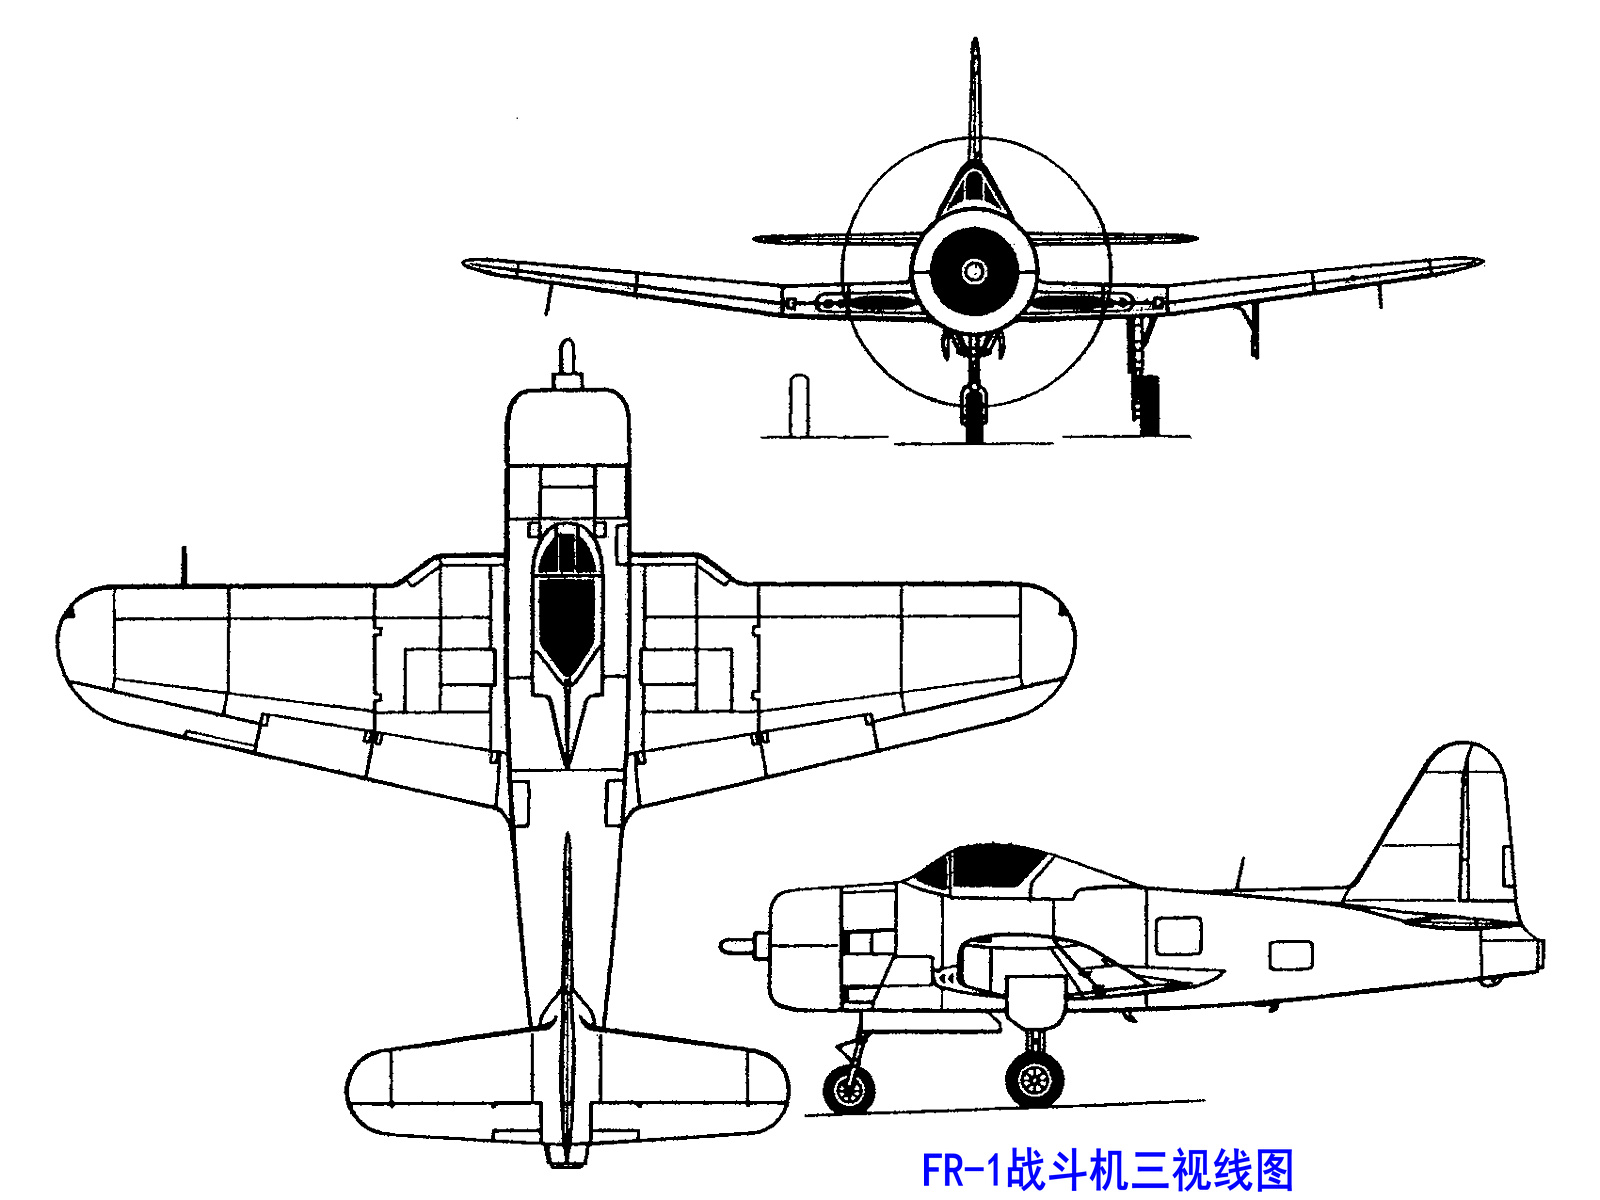 FR-1戰鬥機三視線圖